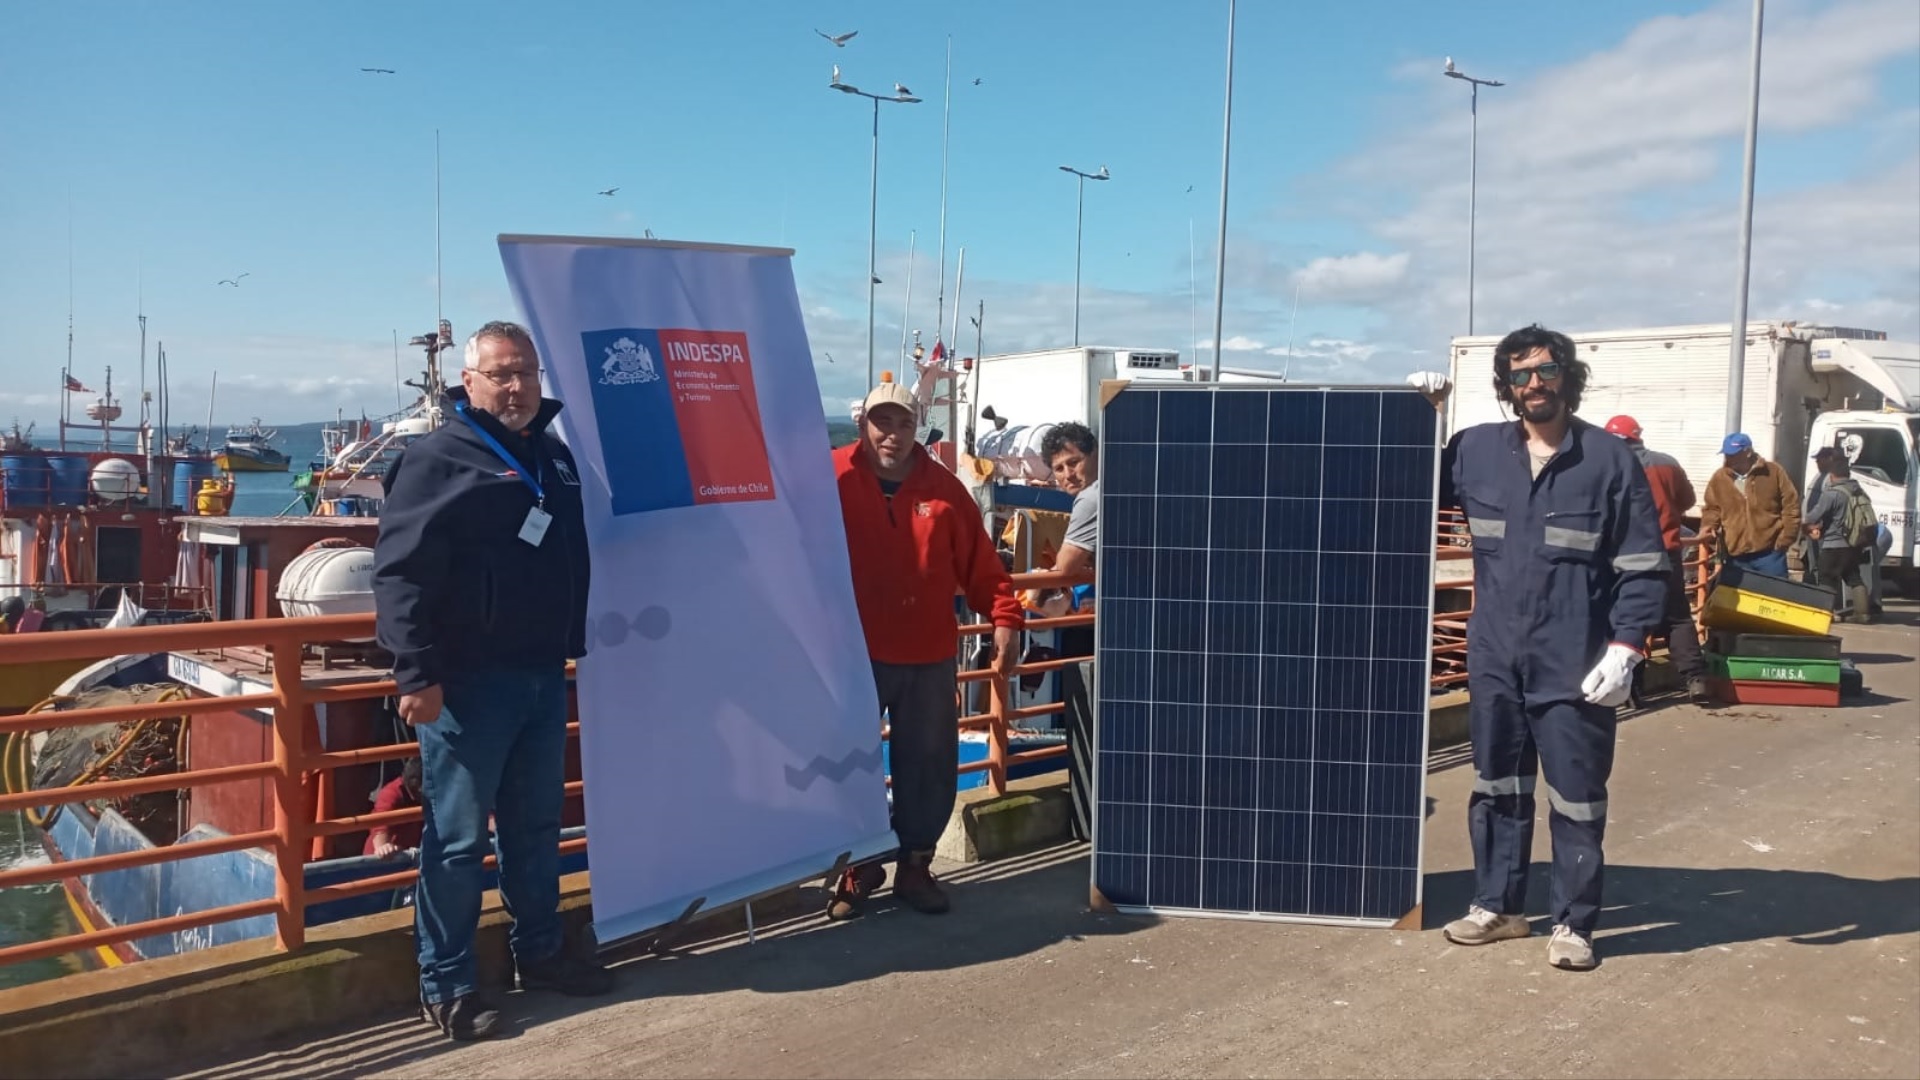 Cerca de 500 embarcaciones incorporan paneles solares y kit fotovoltaico